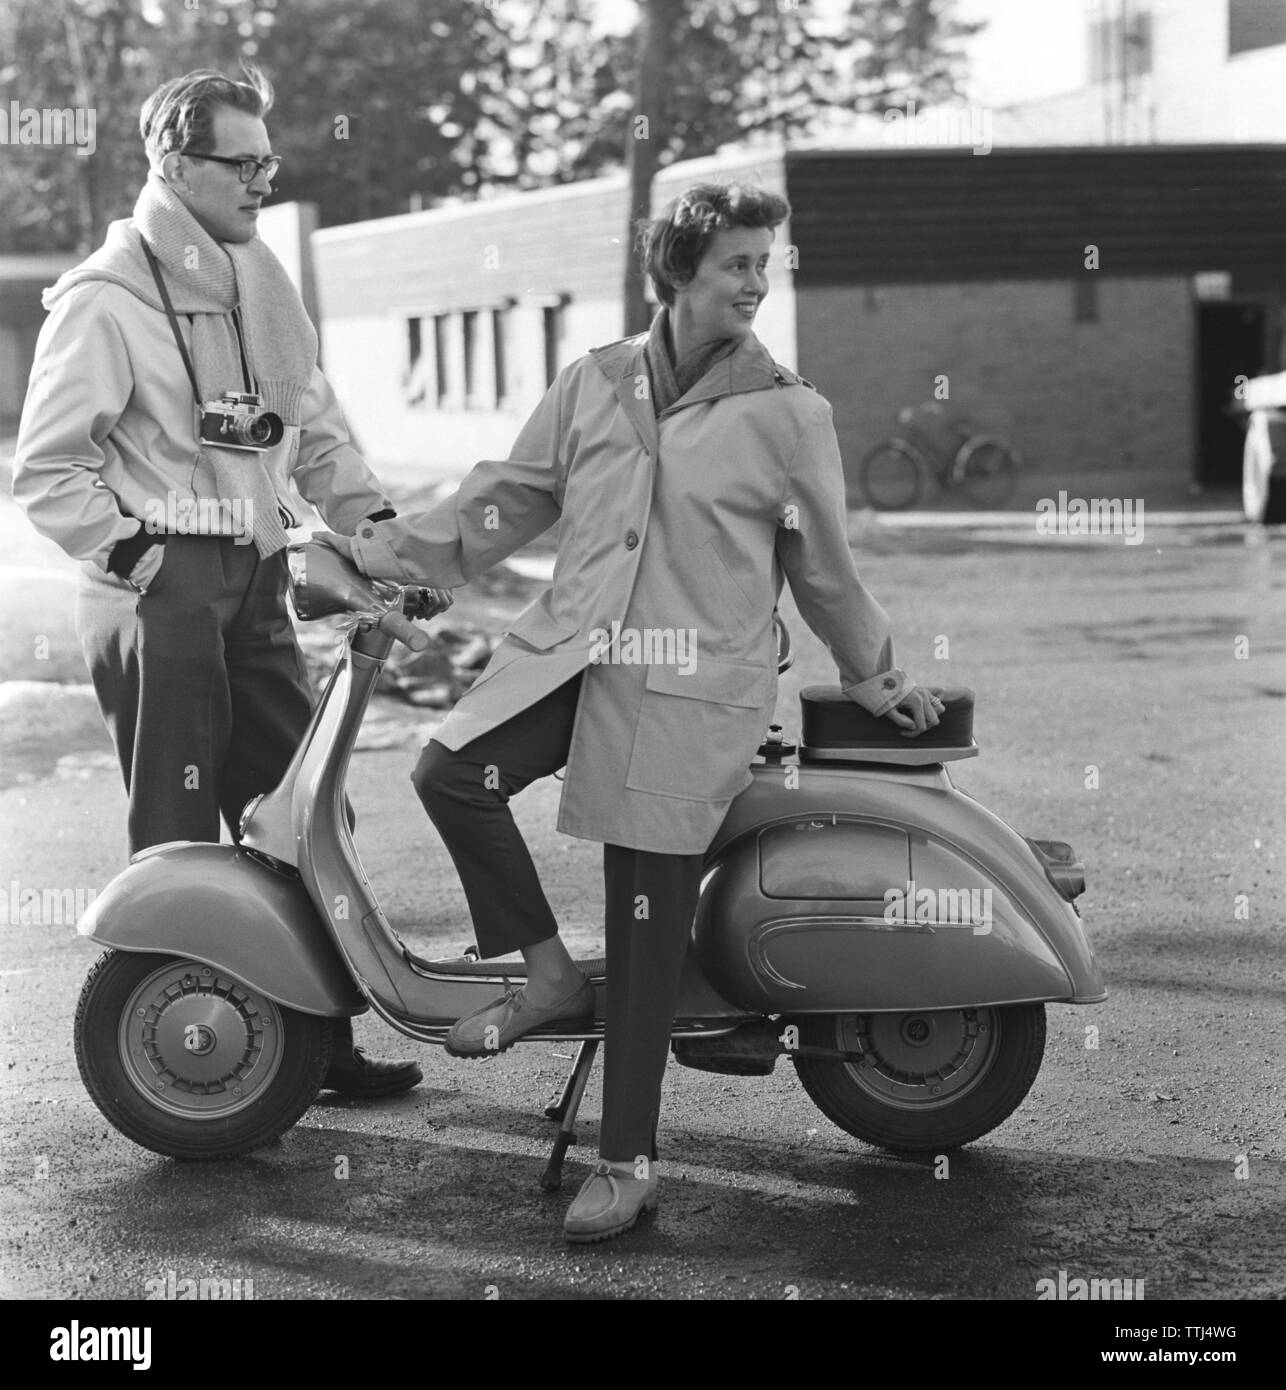 La mode dans les années 1950. Décrit comme la mode du moteur et convient d'utiliser lors de la conduite des cyclomoteurs et motos. Pantalons et vestes durables. Fevrier 1959 Suède Banque D'Images